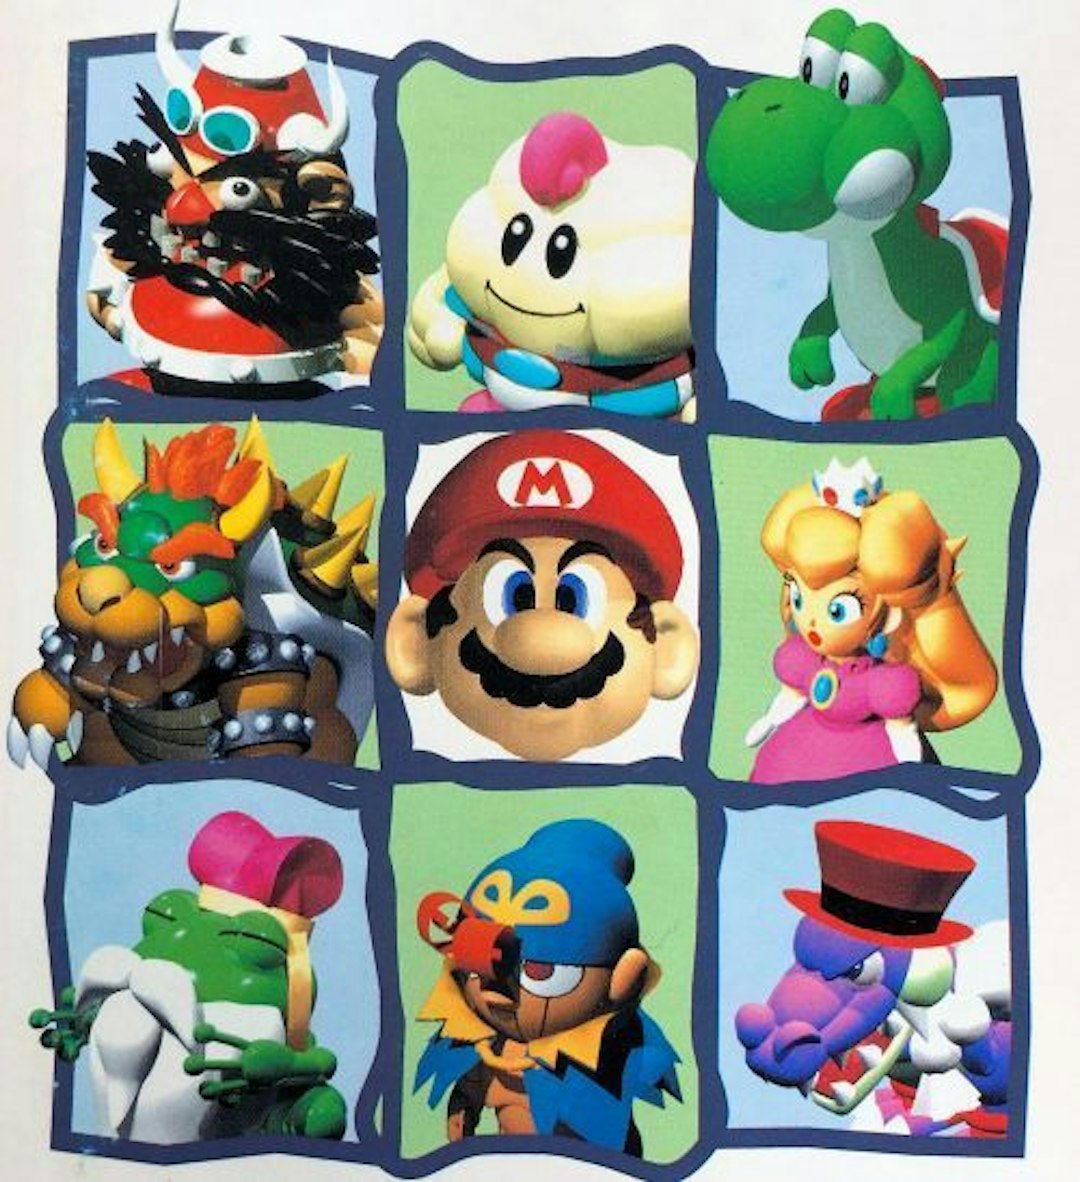 featured image - Die 10 besten Mario-Rollenspiele, sortiert nach Verkäufen